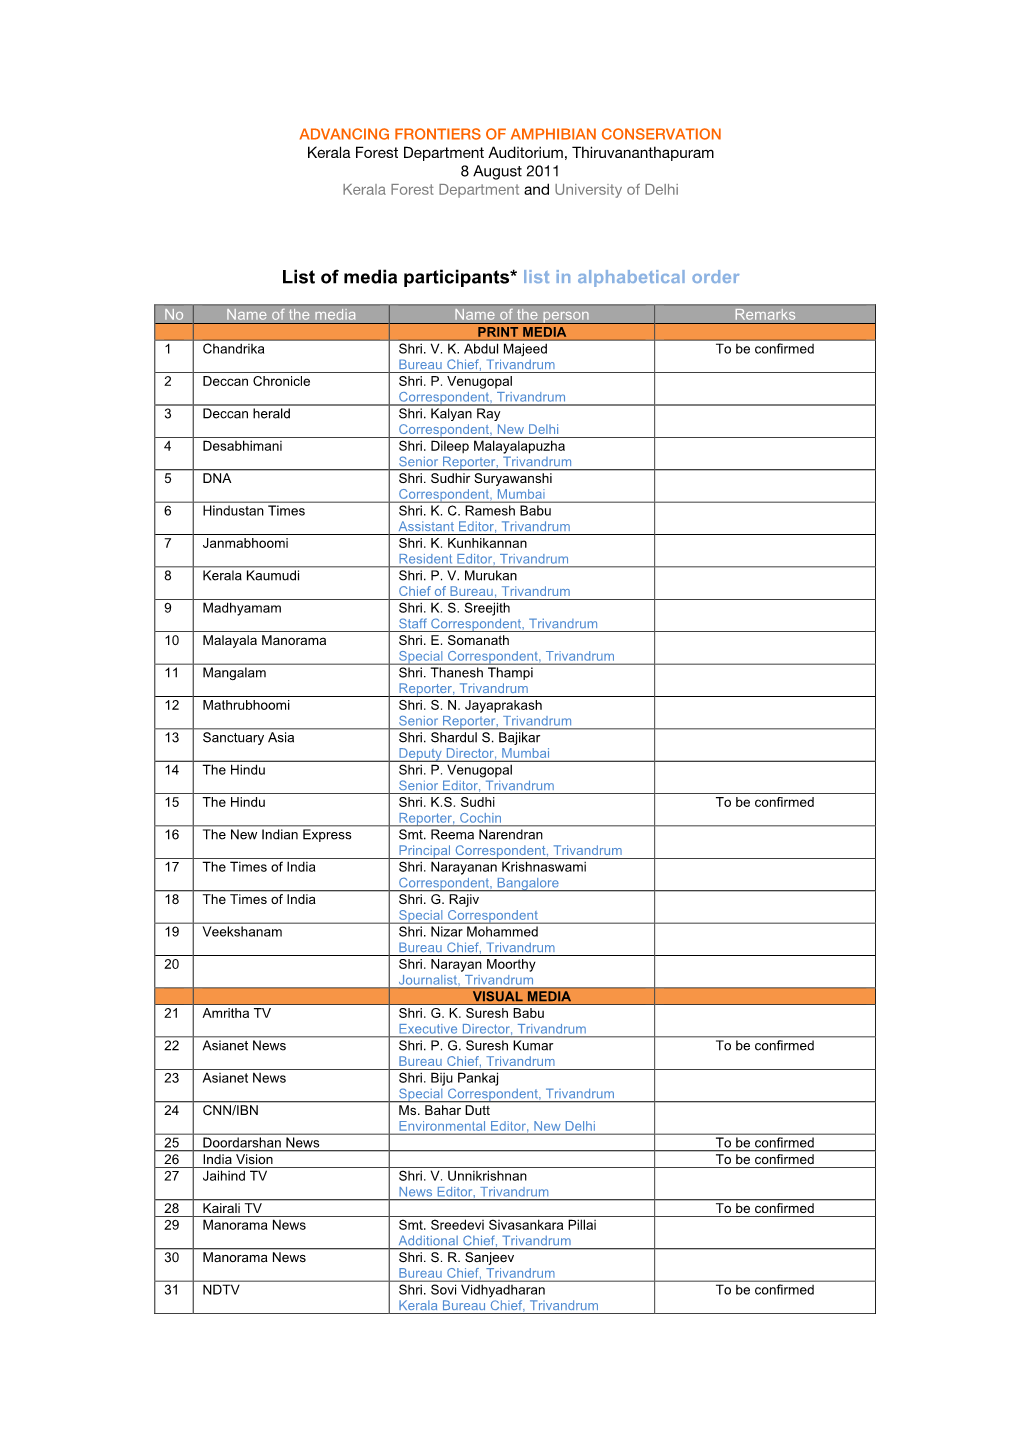 List of Media Participants2